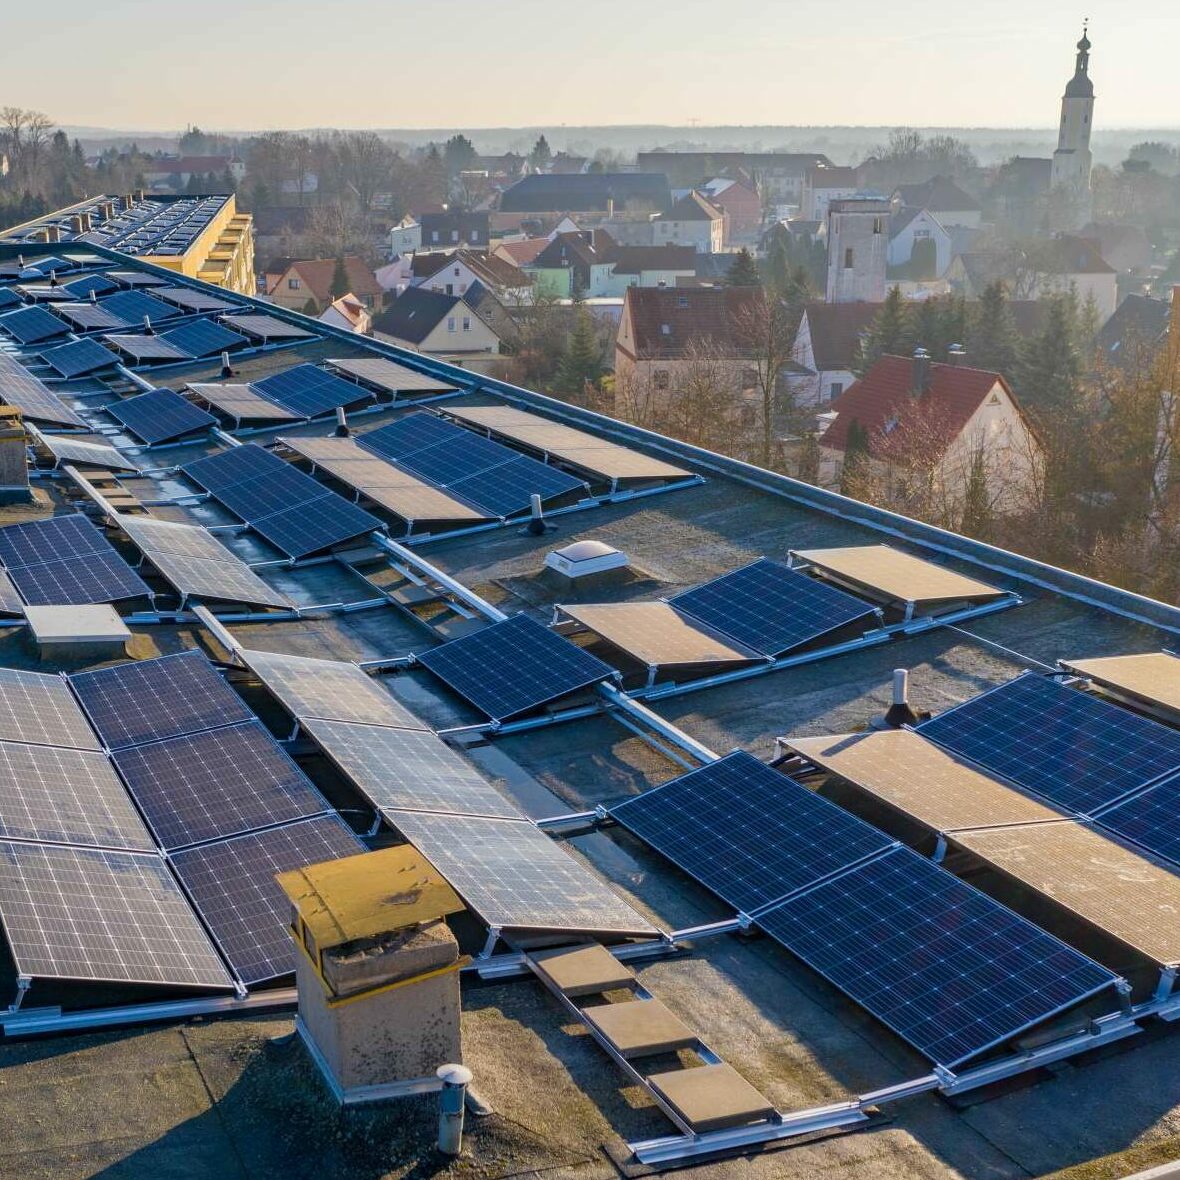 Anmeldung Netzwerktreffen im Landkreis Schaumburg „Photovoltaik in Kommunen“